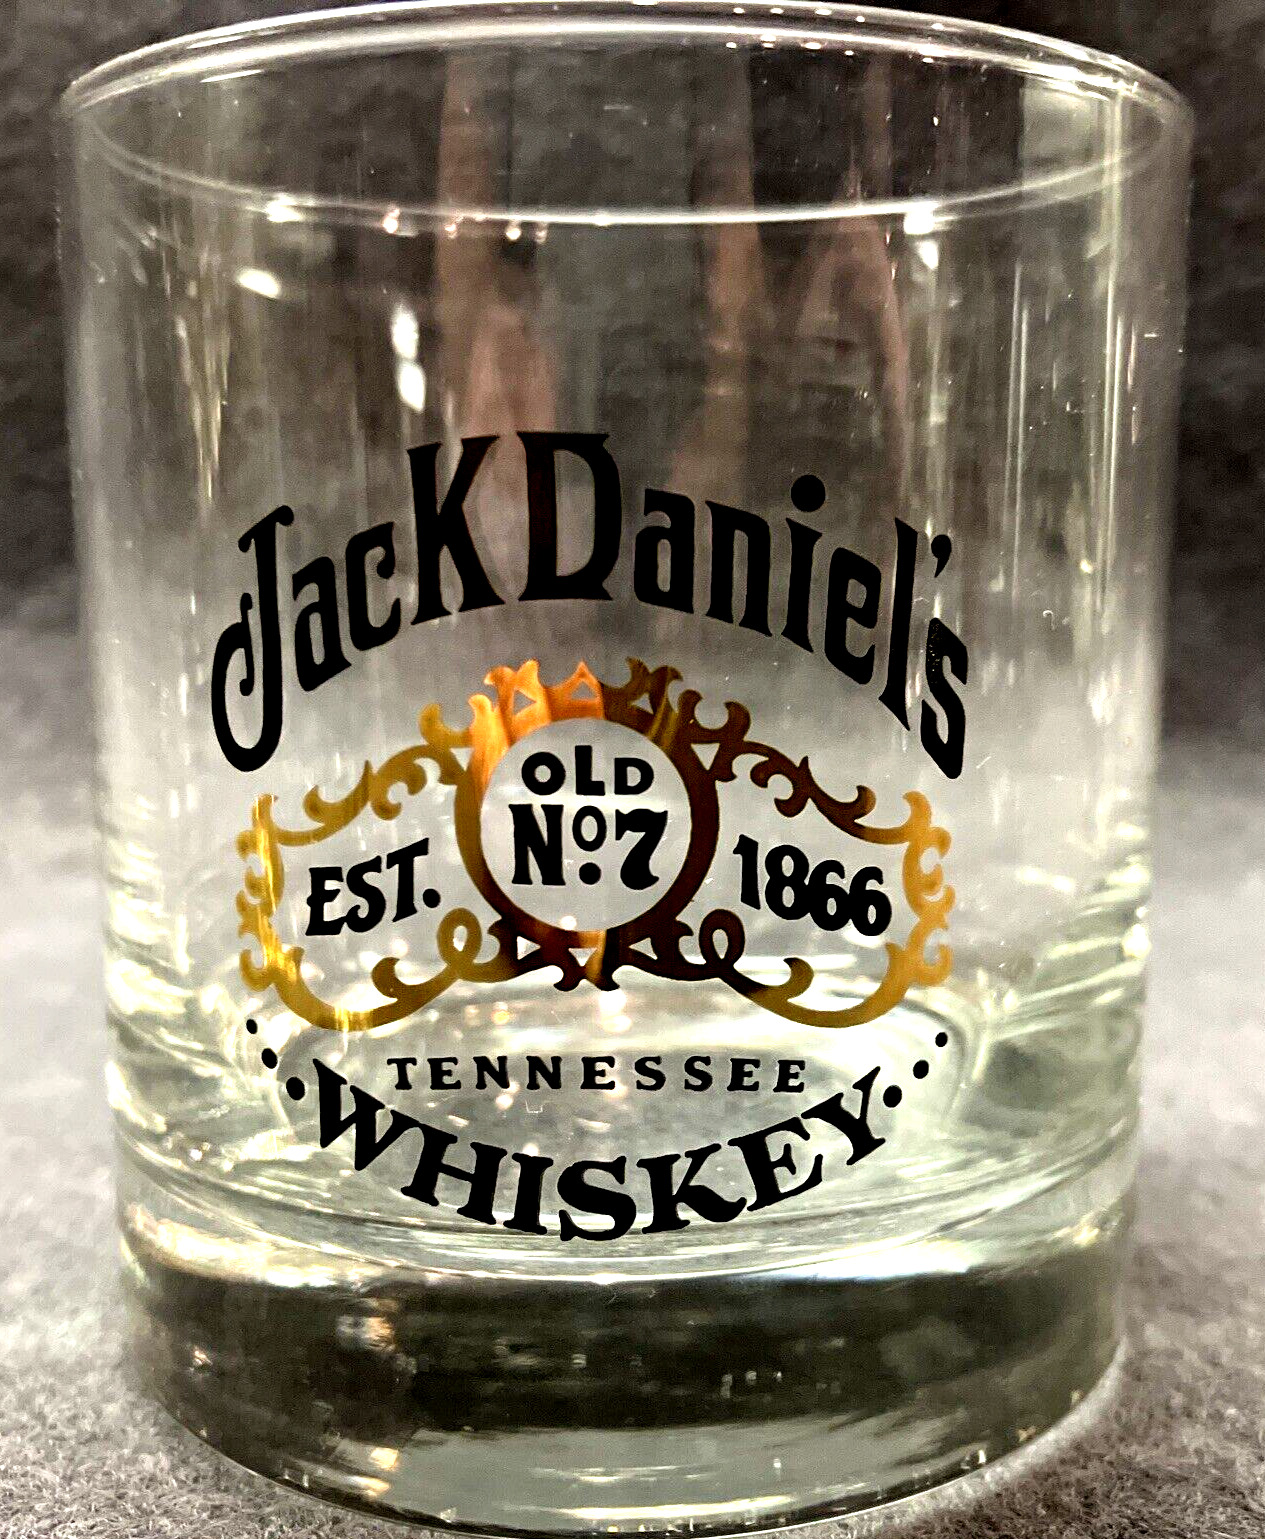 Jack Daniels Old No7 Historical Label Bundle 2 Whiskey Rock Glasses & 1 Sq Shot